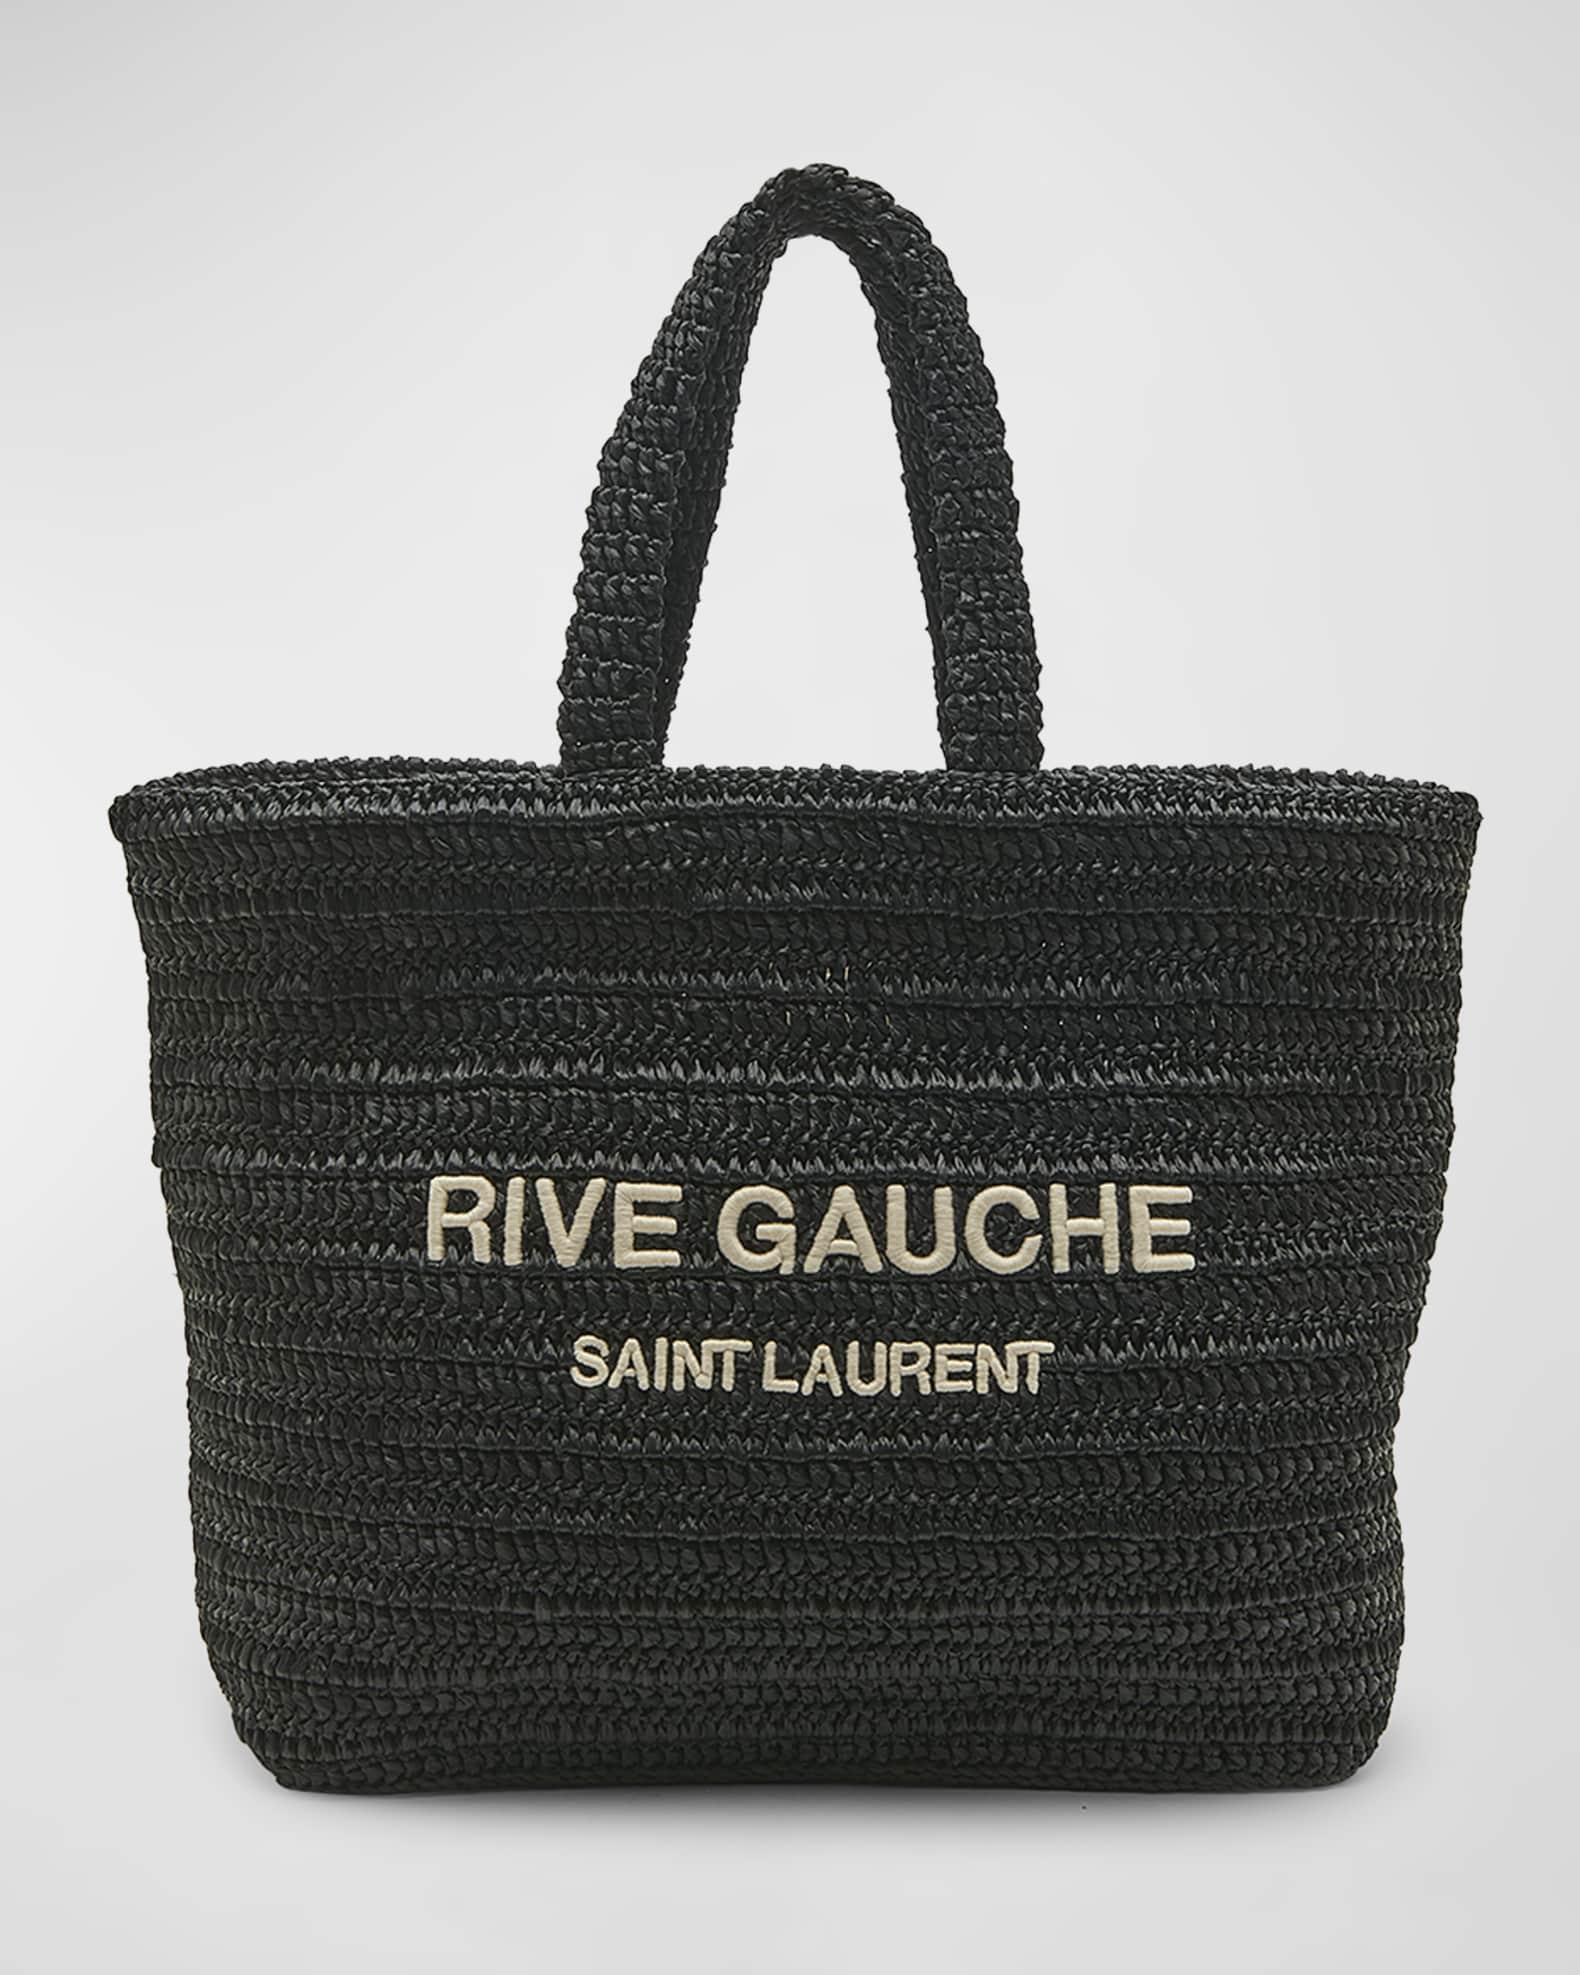 Saint Laurent Rive Gauche Tote Bag Small Neutrals